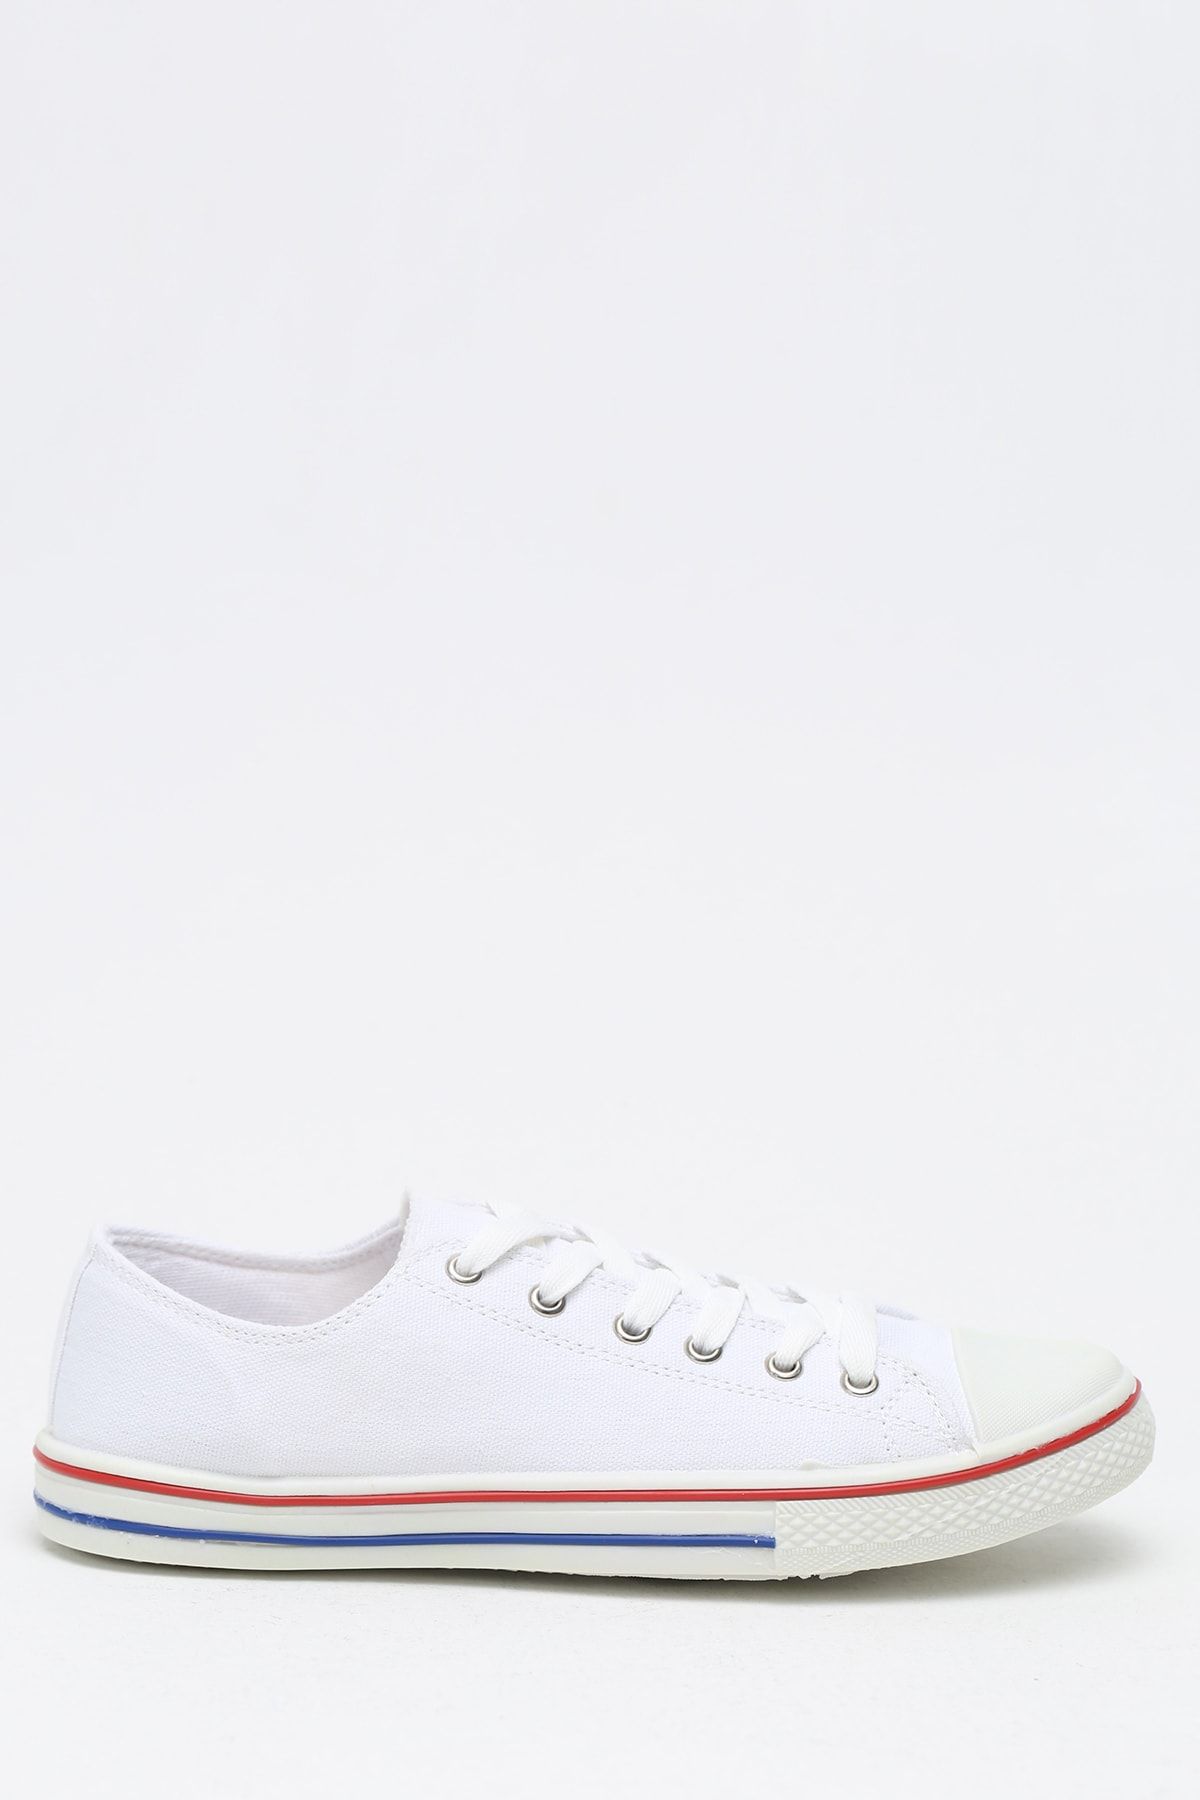 Ayakkabı Modası Beyaz Krem Erkek Ayakkabı M1003-19-110079R